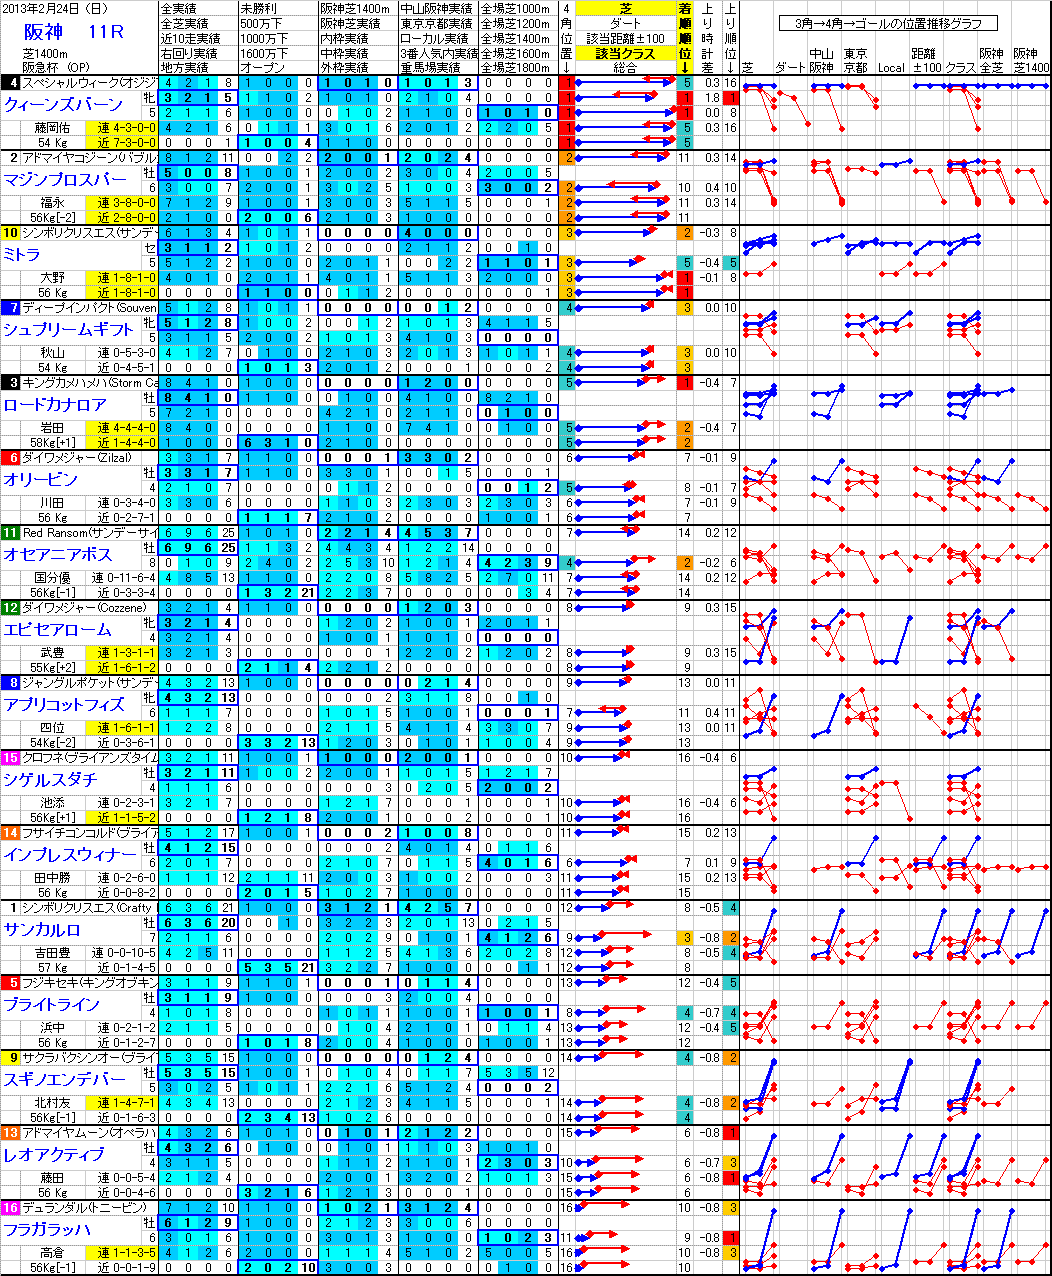 阪神 2013年2月24日 （日） ： 11R － 分析データ